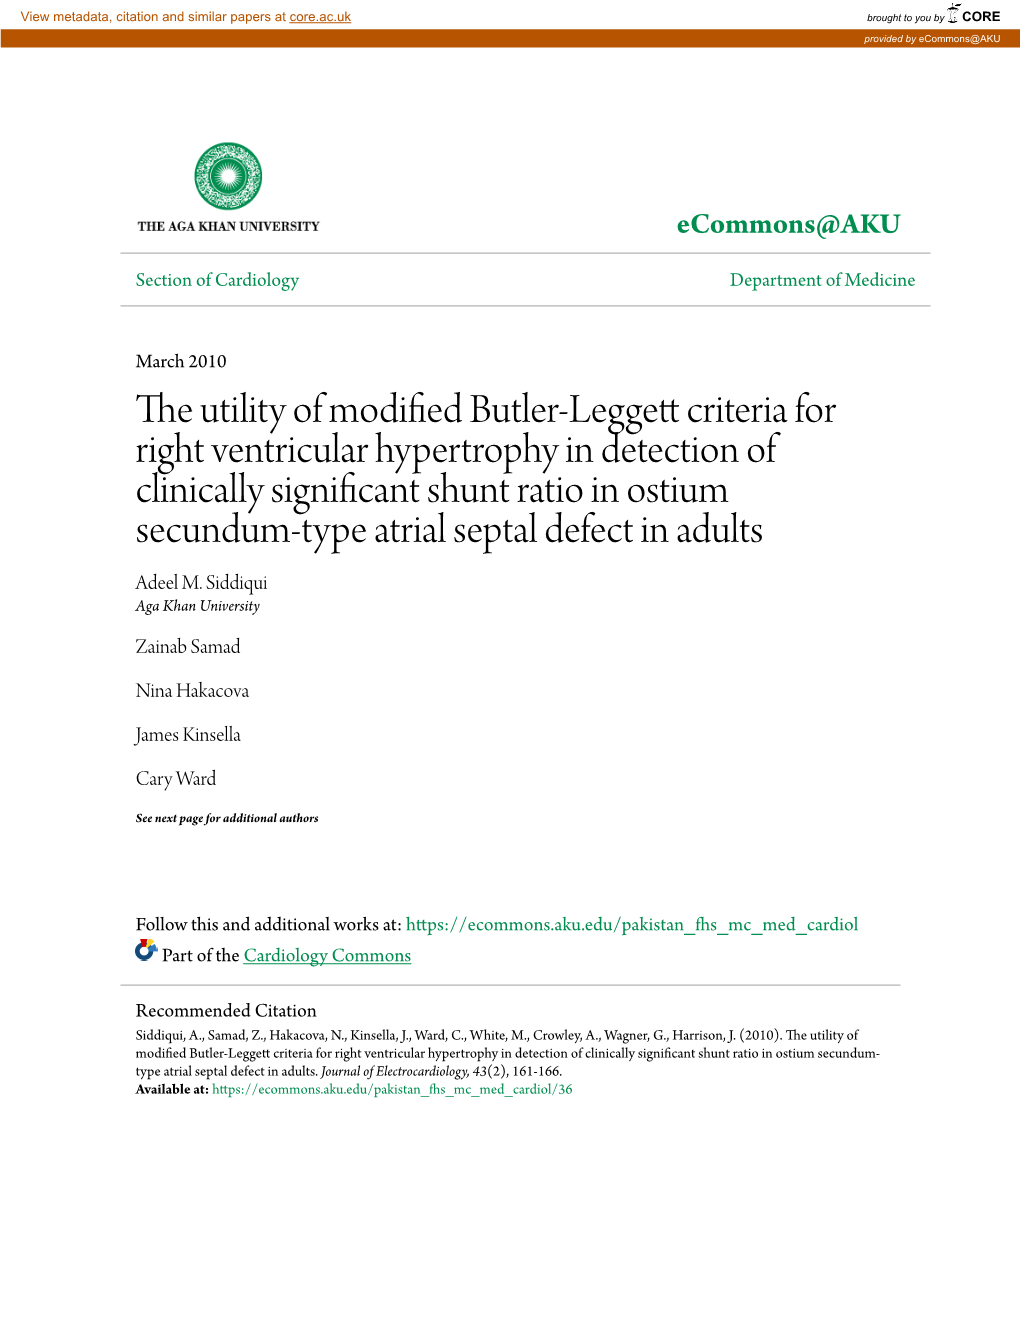 The Utility of Modified Butler-Leggett Criteria for Right Ventricular